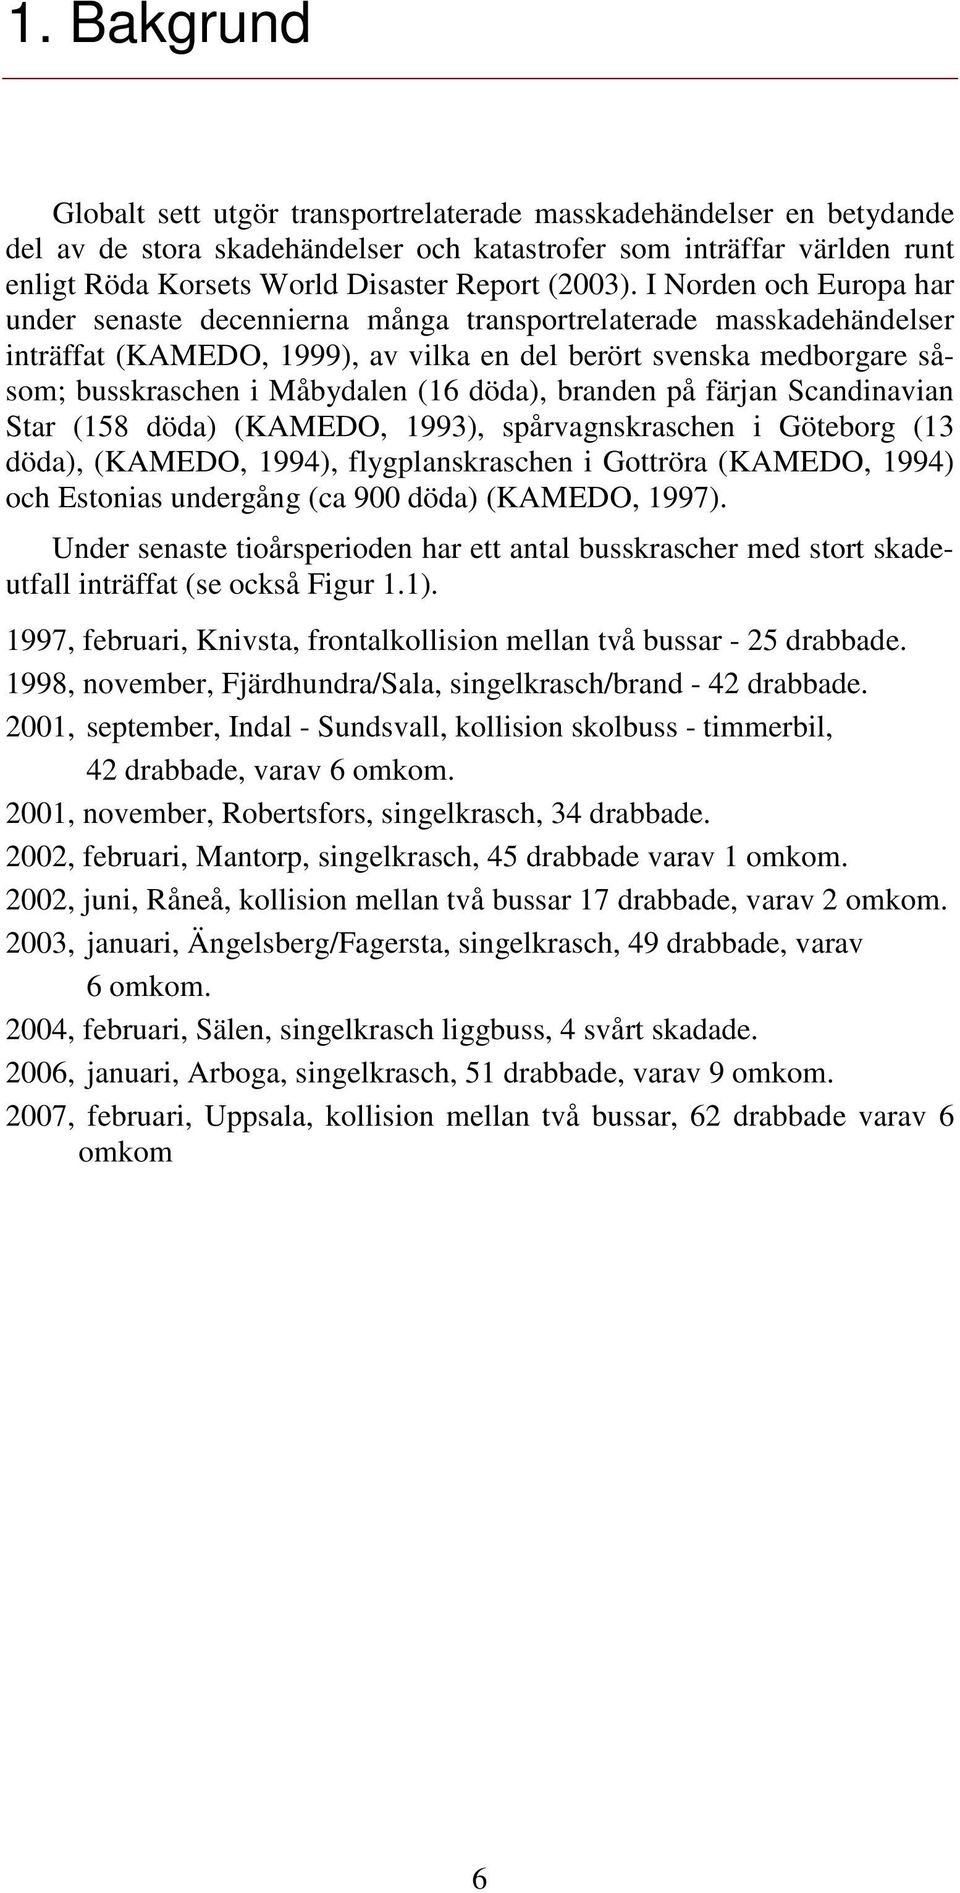 I Norden och Europa har under senaste decennierna många transportrelaterade masskadehändelser inträffat (KAMEDO, 1999), av vilka en del berört svenska medborgare såsom; busskraschen i Måbydalen (16